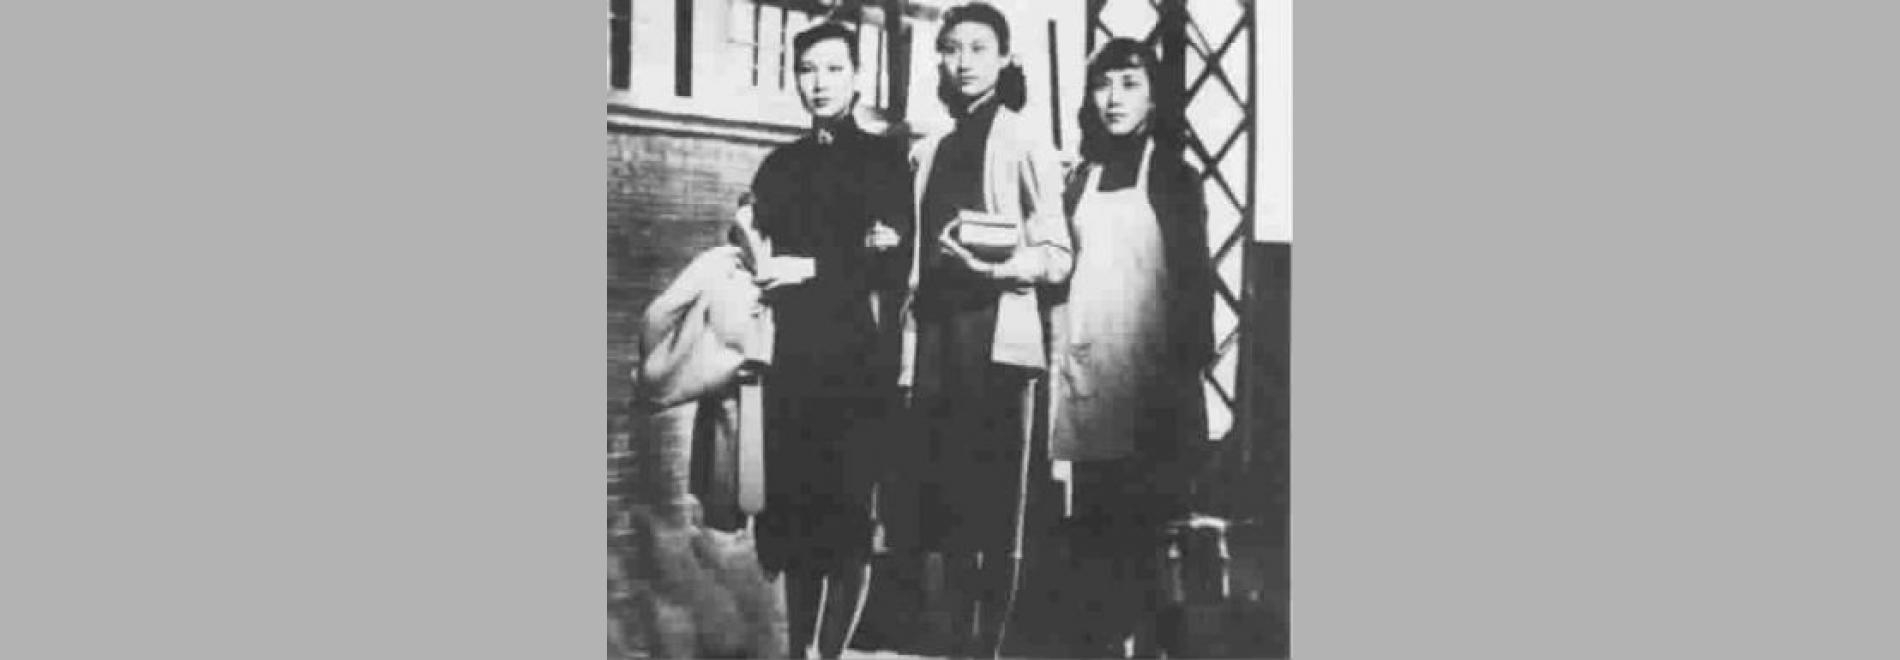 Liren xing / Tres noies (Chen Liting, 1949)